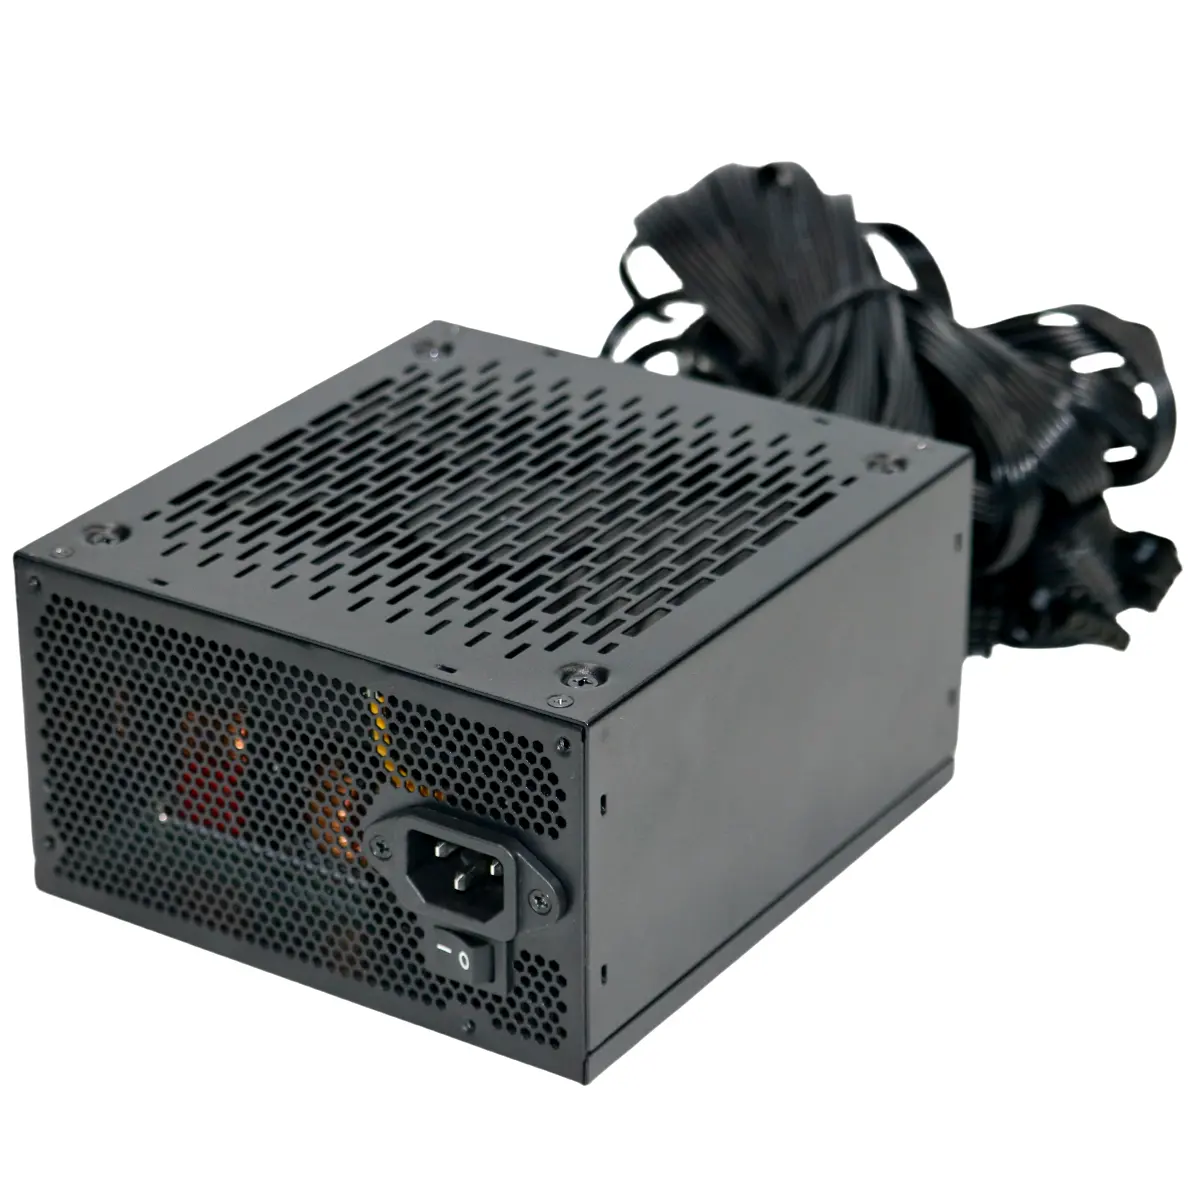 Высокое качество 850 Вт Pcie5.0 Золото 80 плюс блок питания компьютера (PSU) для ПК для серверных и настольных приложений